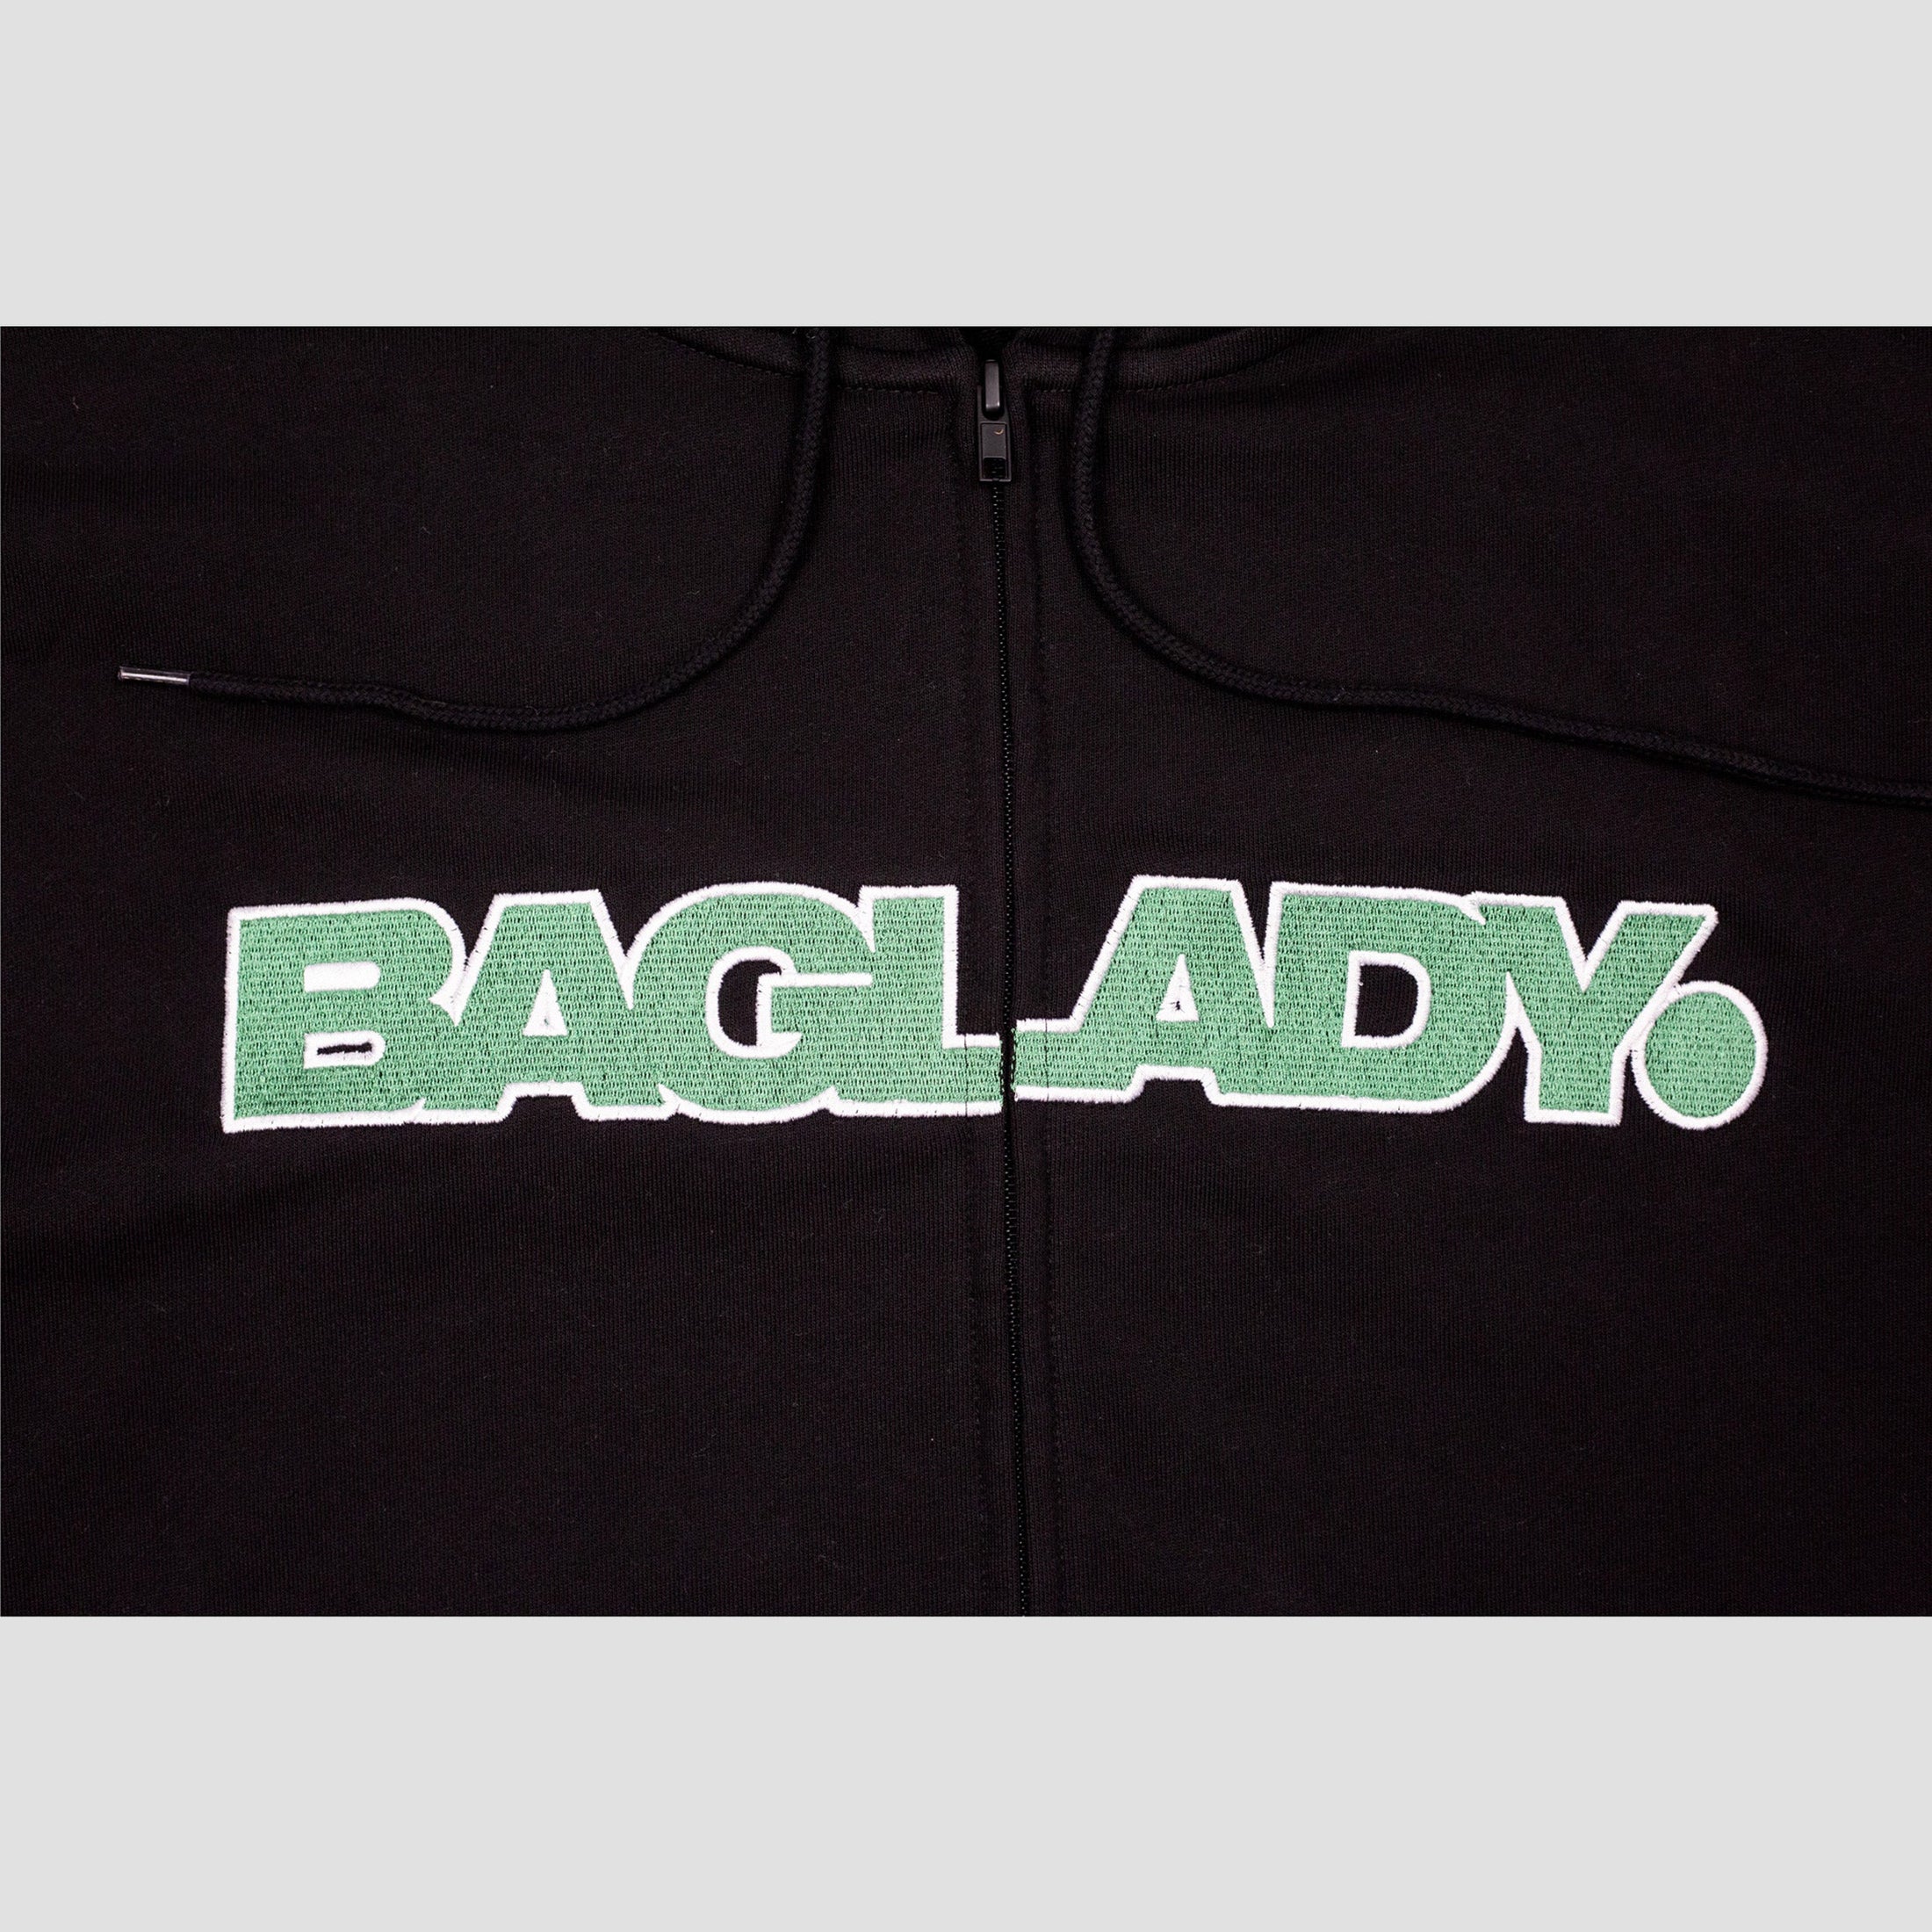 Baglady Full Zip Hood Black